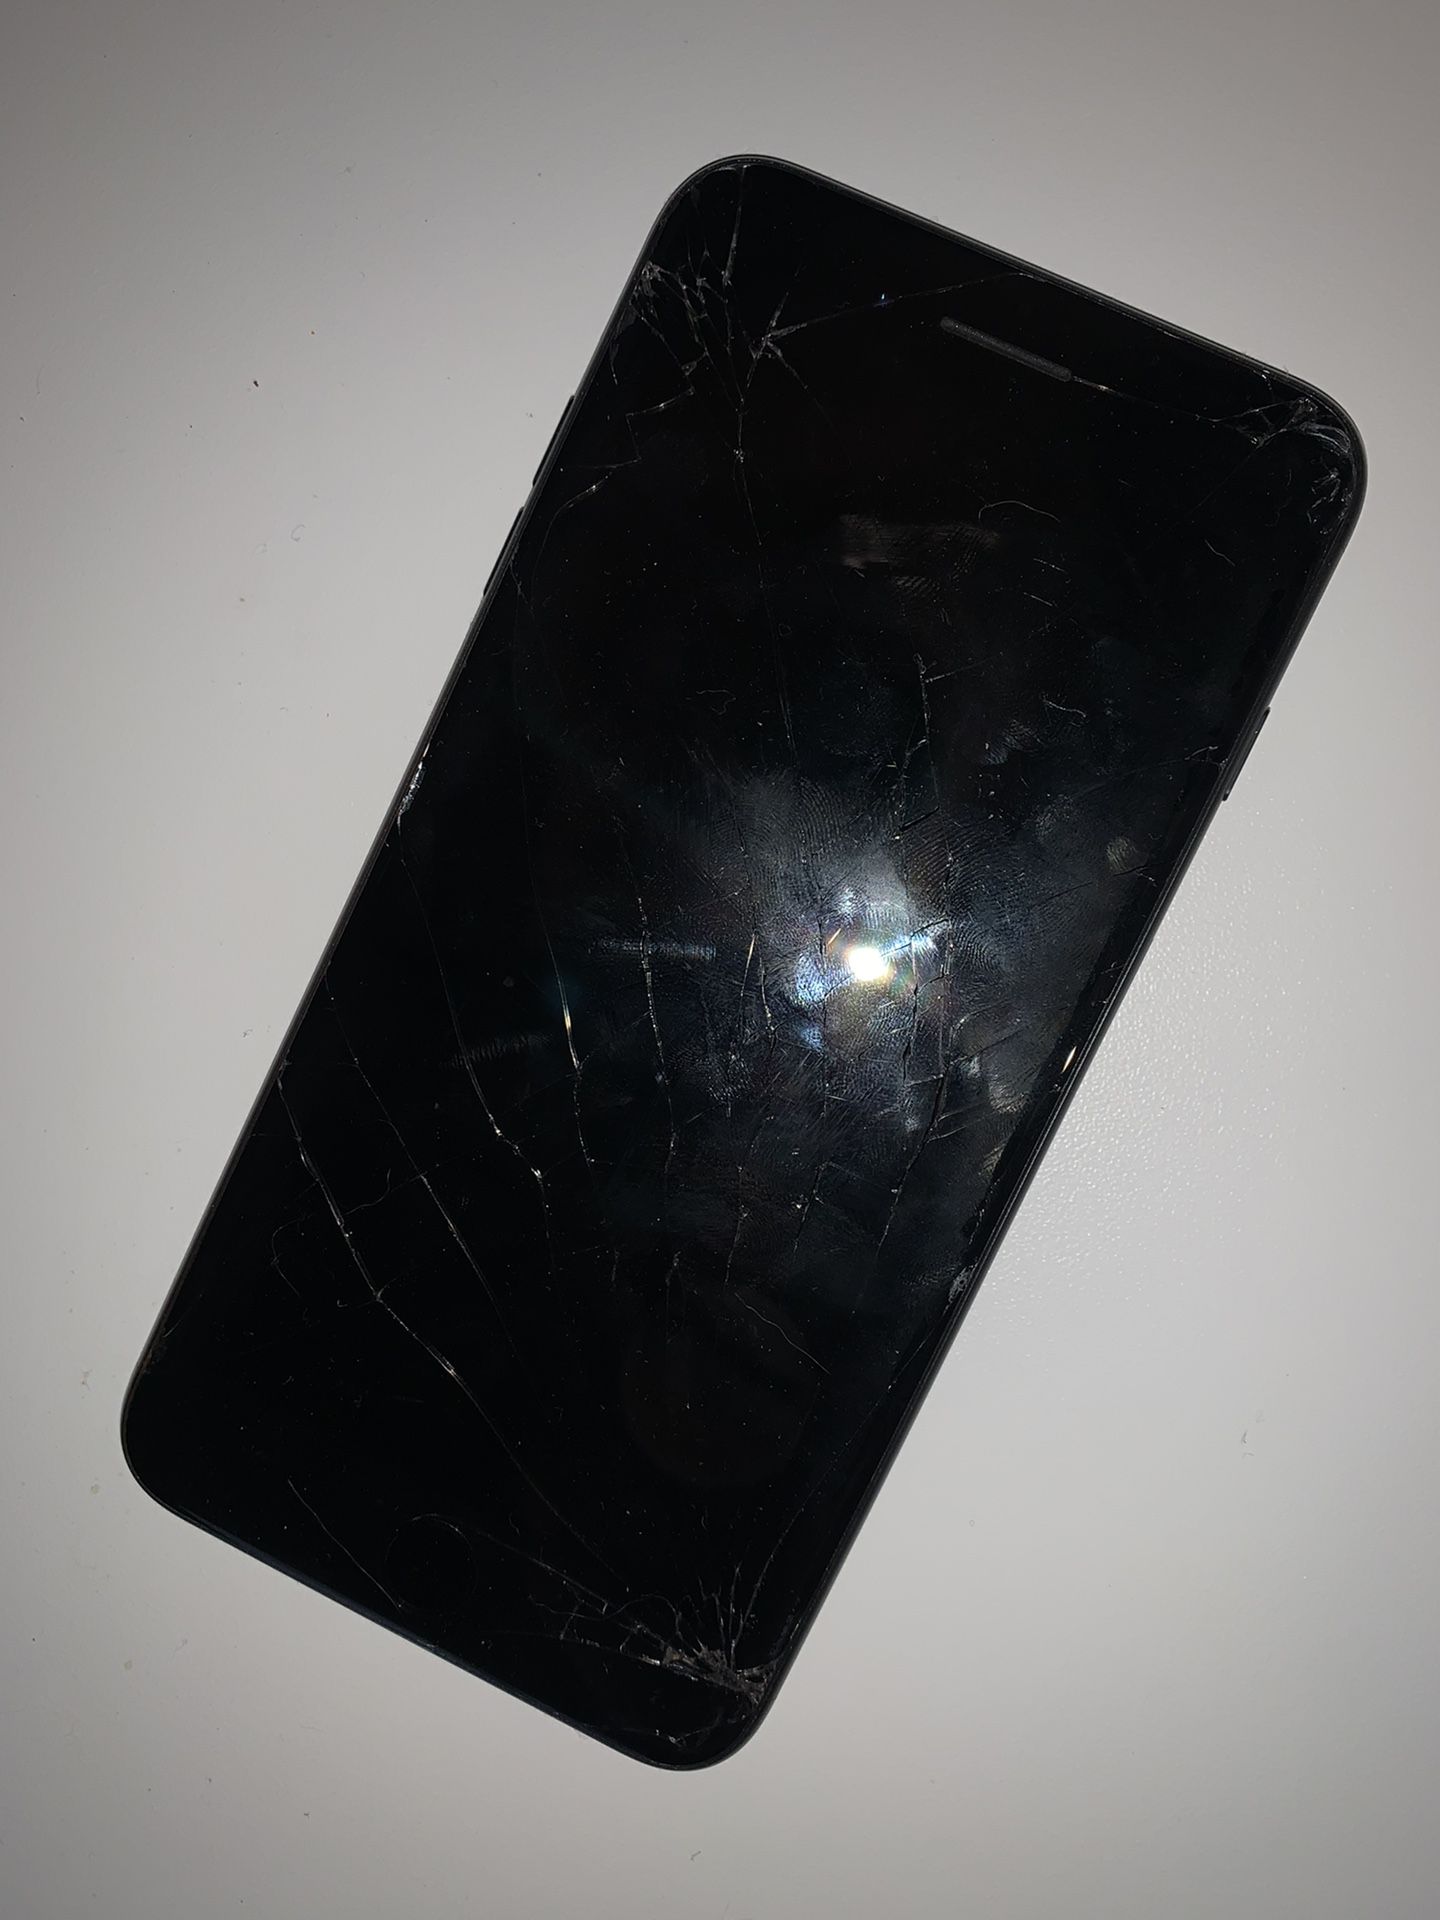 Very Cracked iPhone 7+